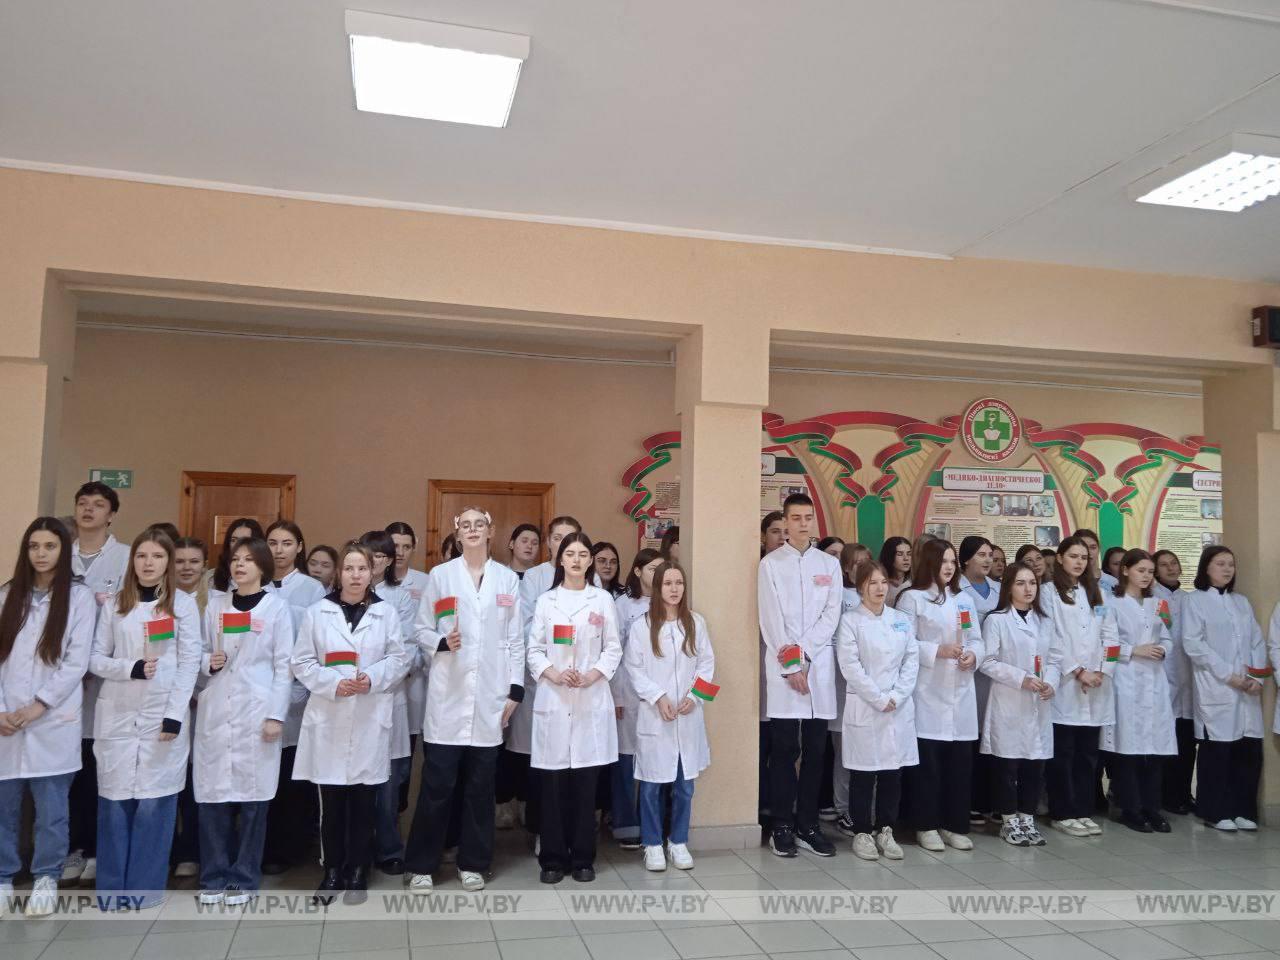 Волонтерскому отряду Пинского государственного медицинского колледжа присвоено звание